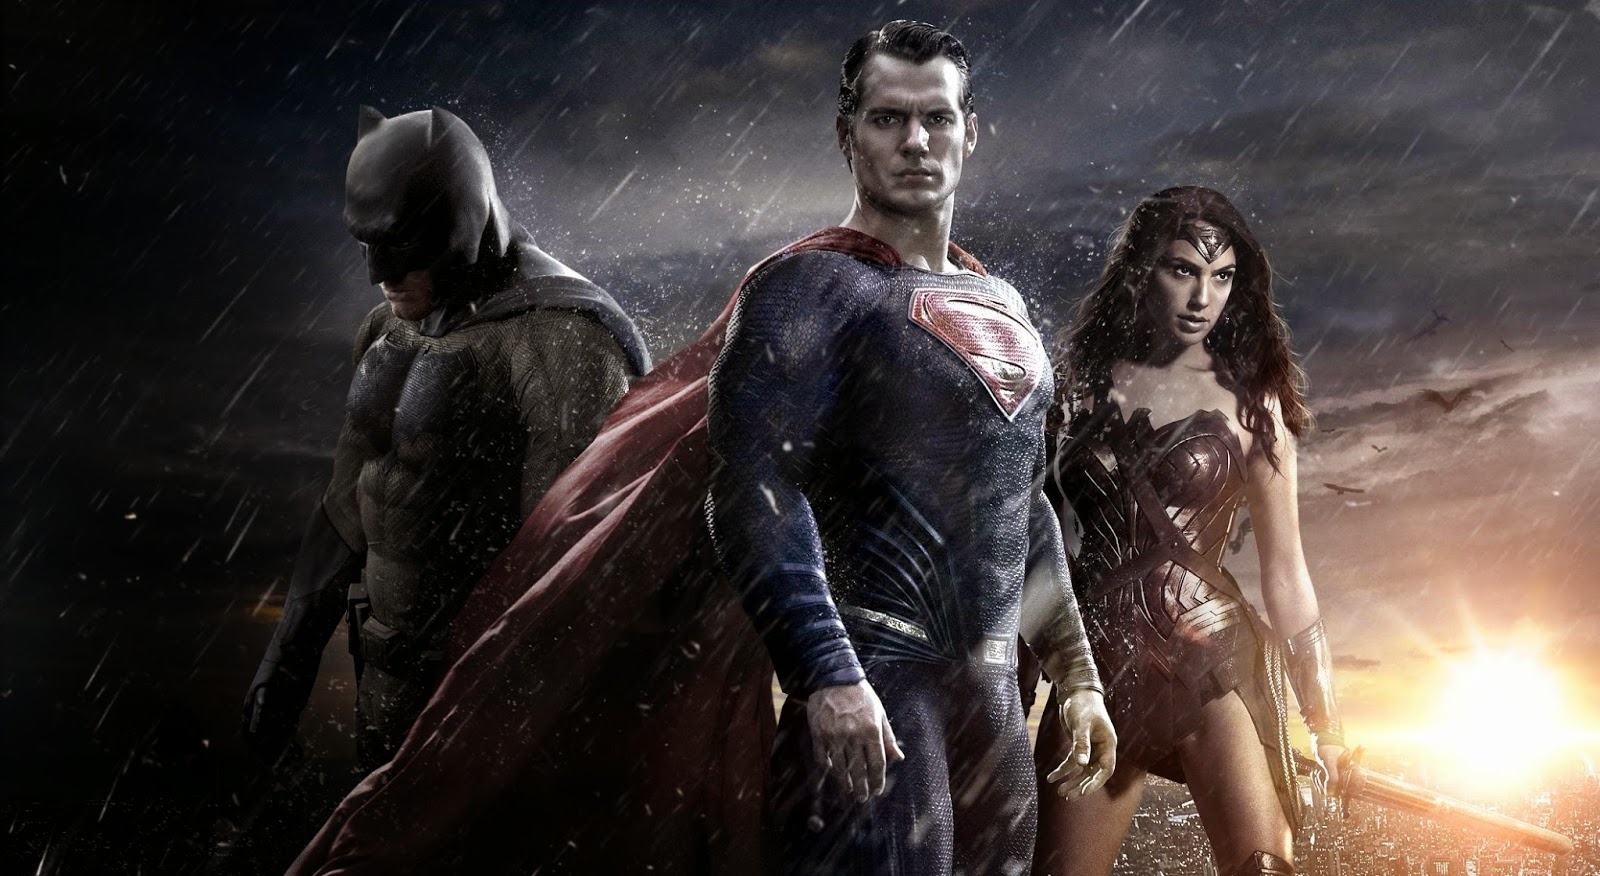 Mulher-Maravilha, Batman e Superman ganharão novos filmes animados